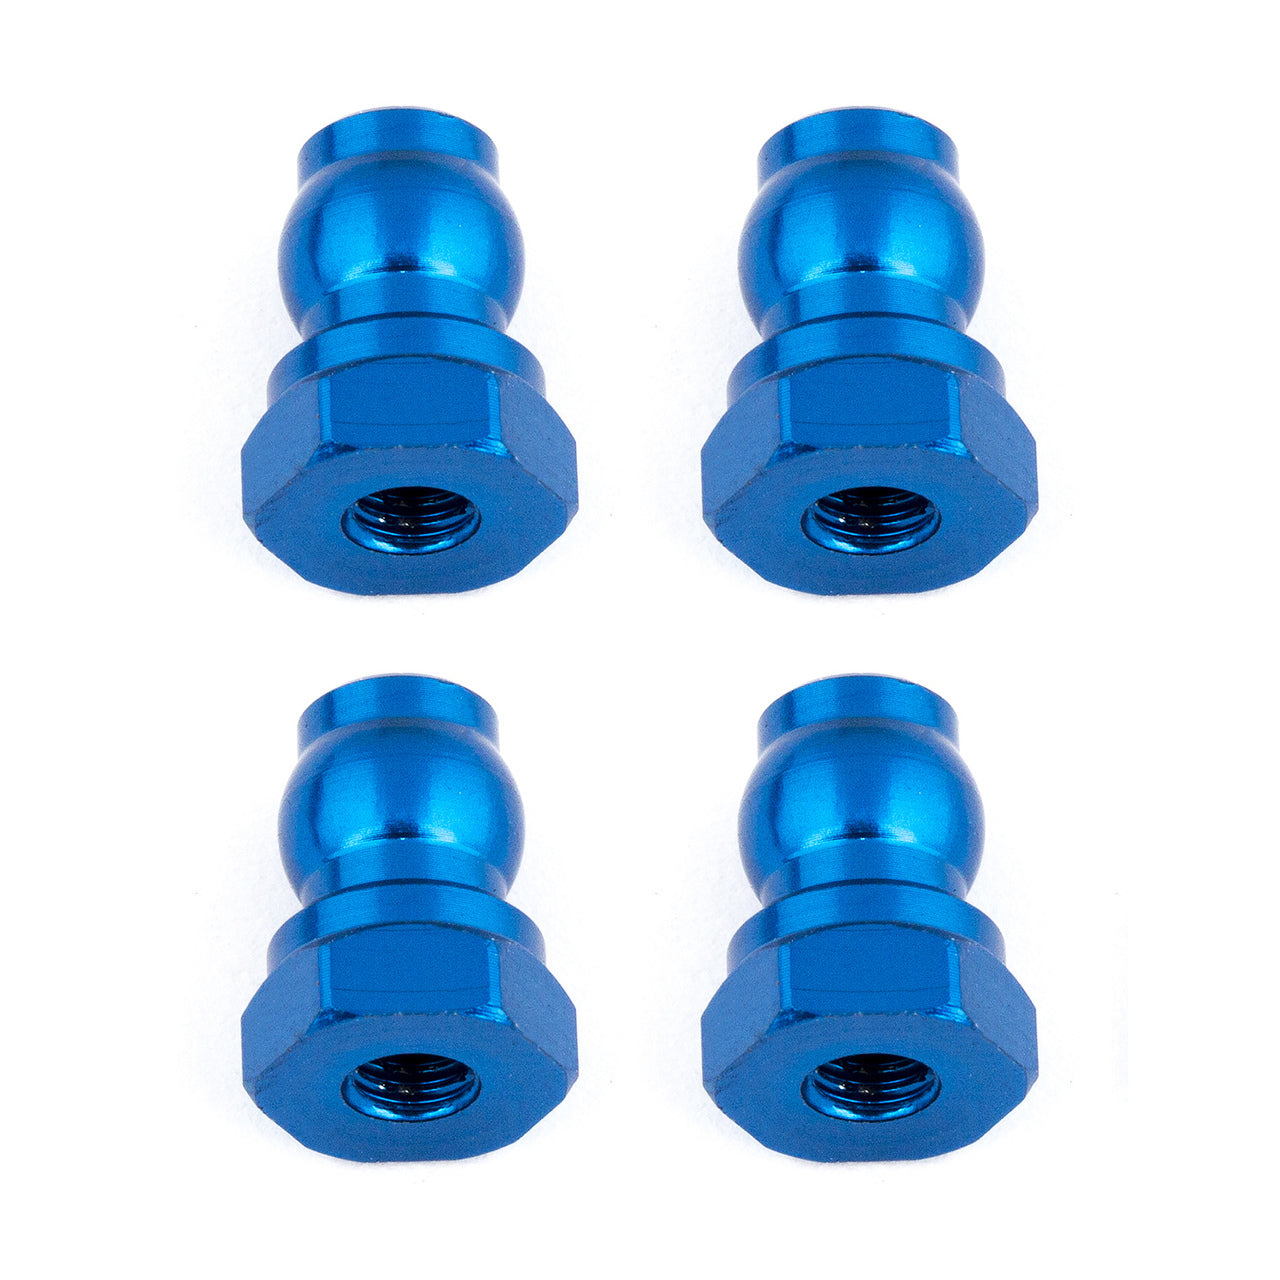 Bujes de amortiguador de aluminio Team Associated de 10 mm (azul)